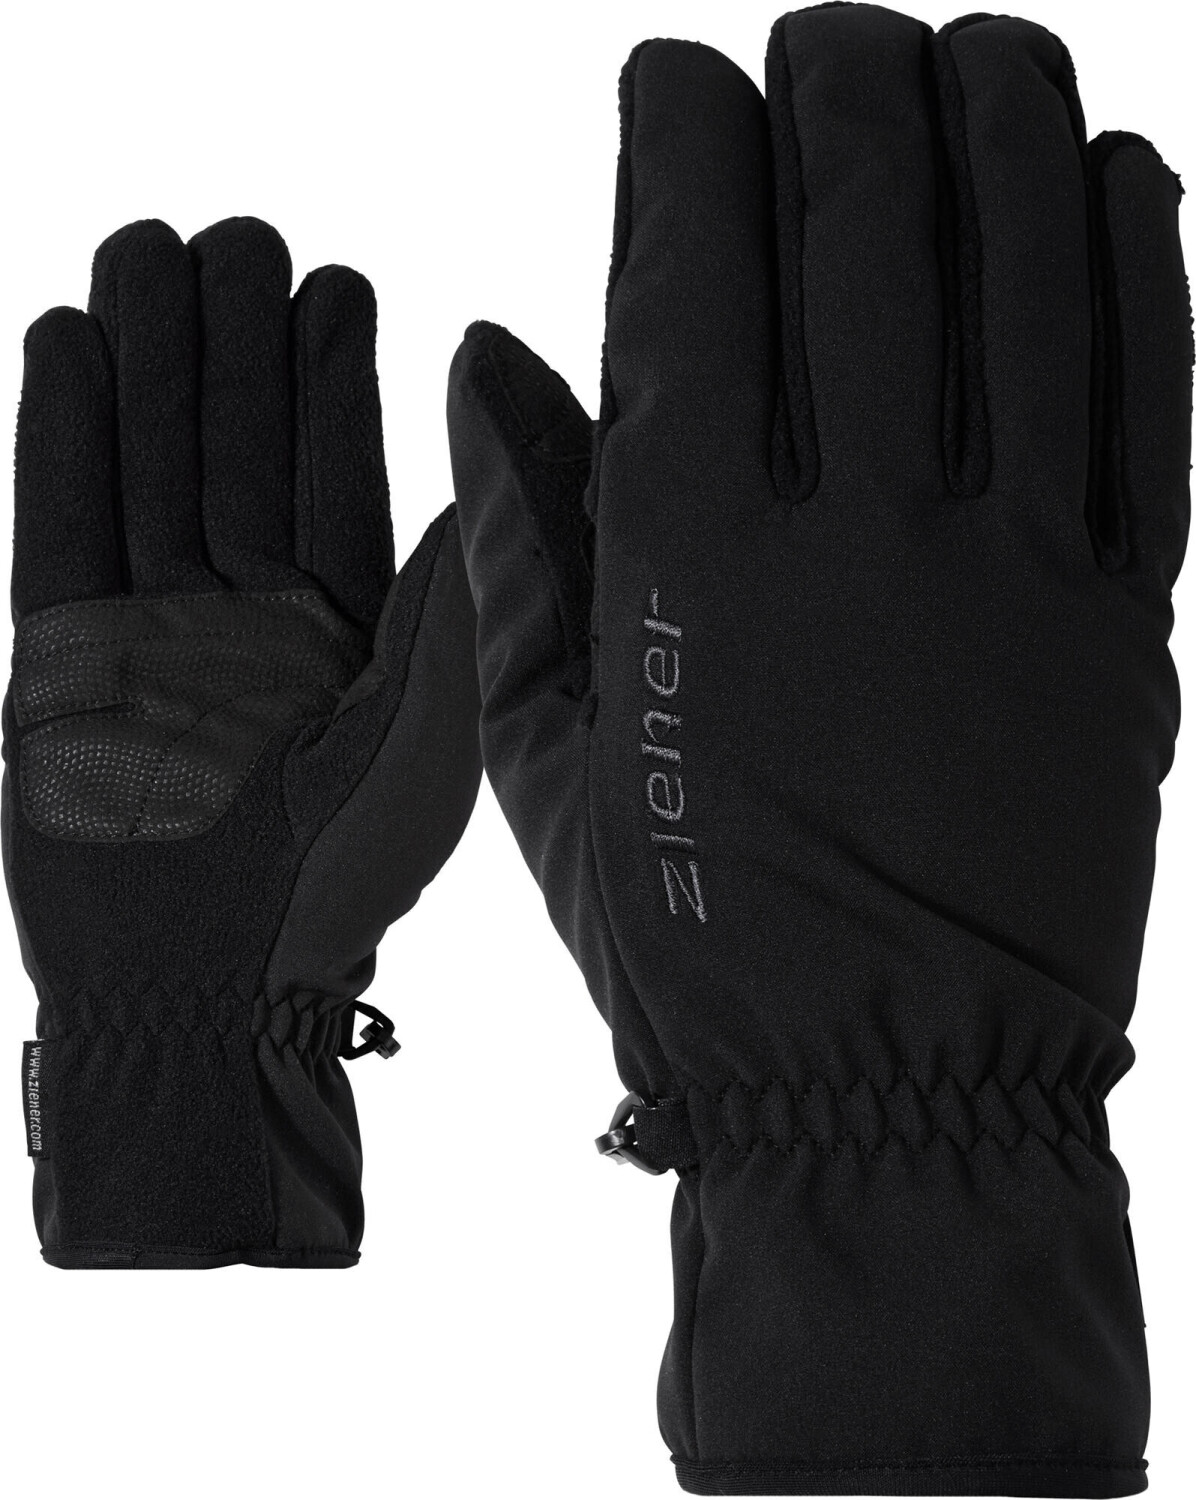 Ziener Import Glove Multisport ab 19,55 € | Preisvergleich bei